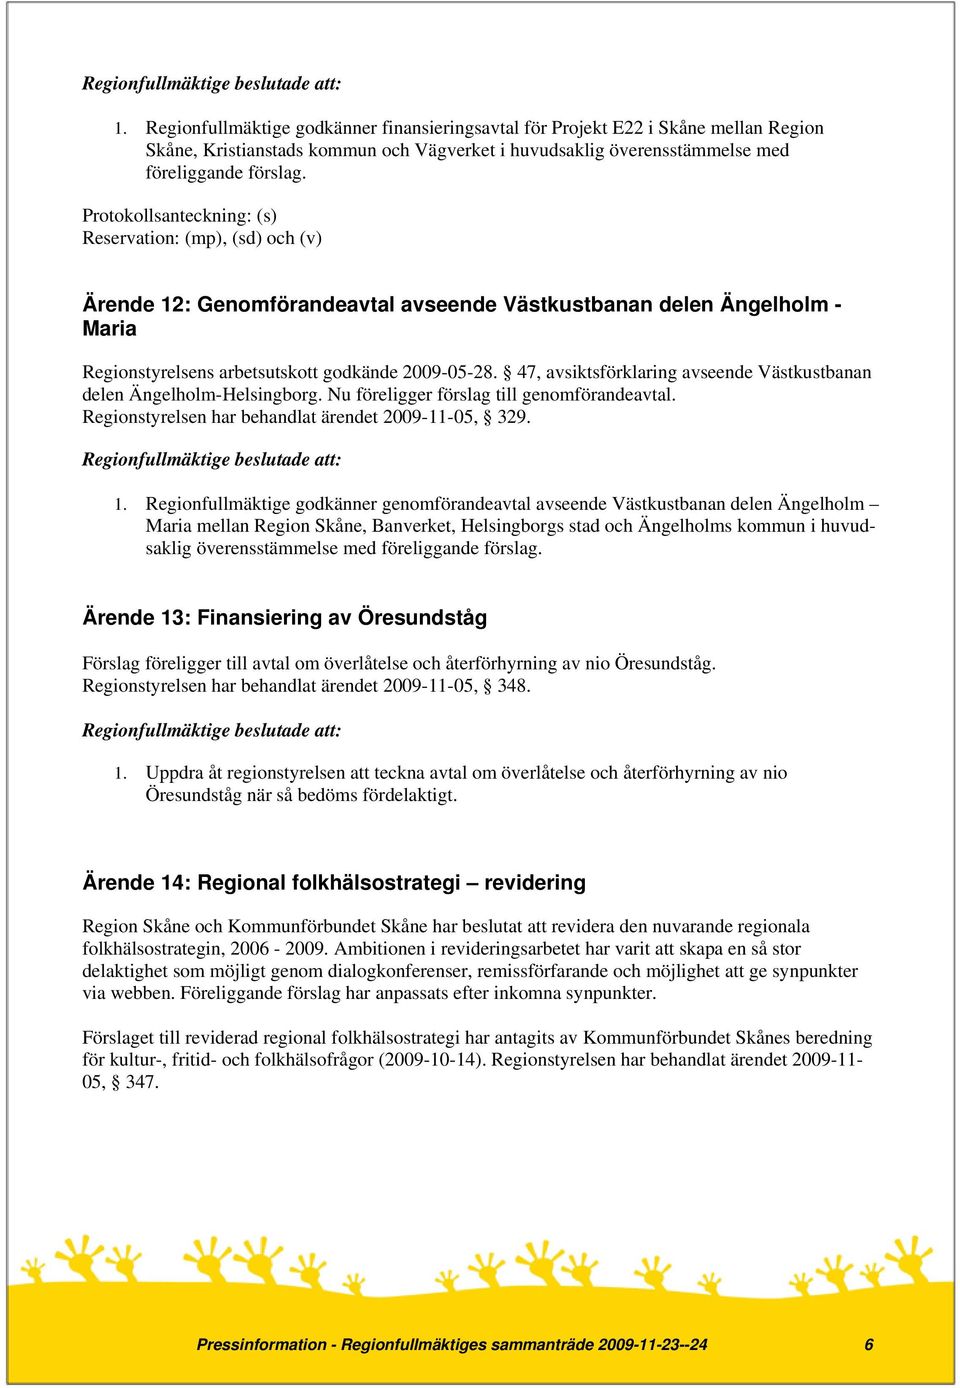 47, avsiktsförklaring avseende Västkustbanan delen Ängelholm-Helsingborg. Nu föreligger förslag till genomförandeavtal. Regionstyrelsen har behandlat ärendet 2009-11-05, 329. 1.